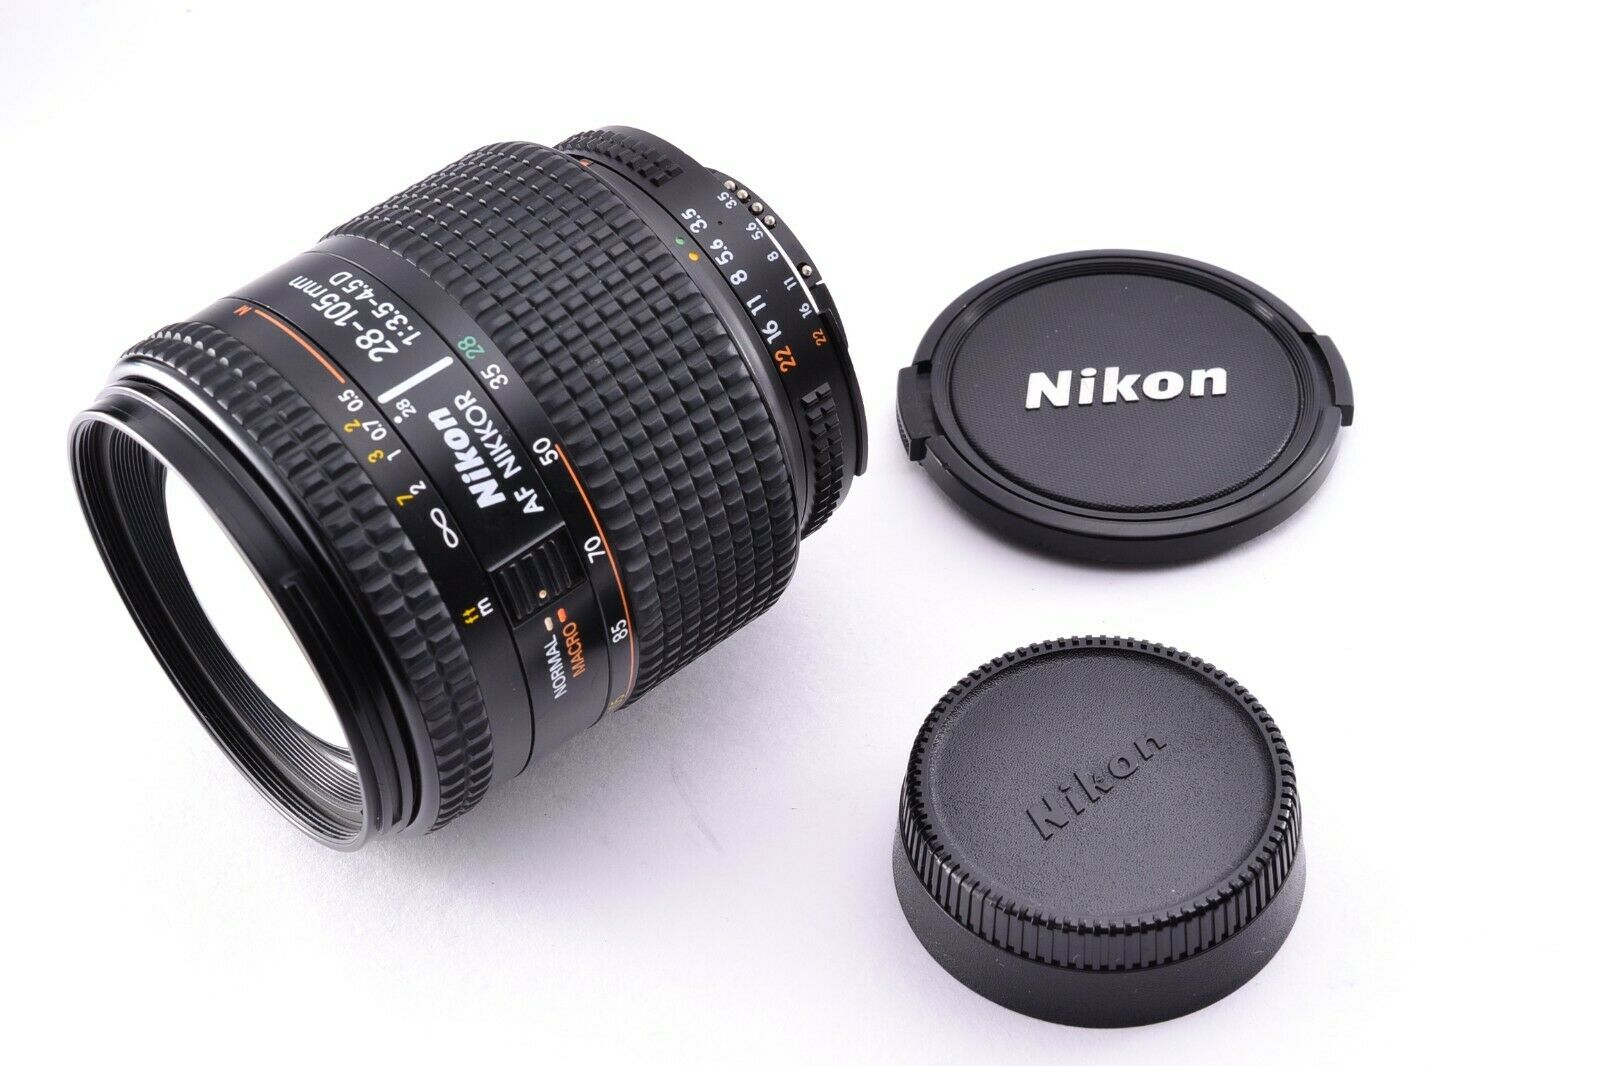 Nikon AF NIKKOR 28-105mm 1:3.5-4.5D マクロ - レンズ(ズーム)